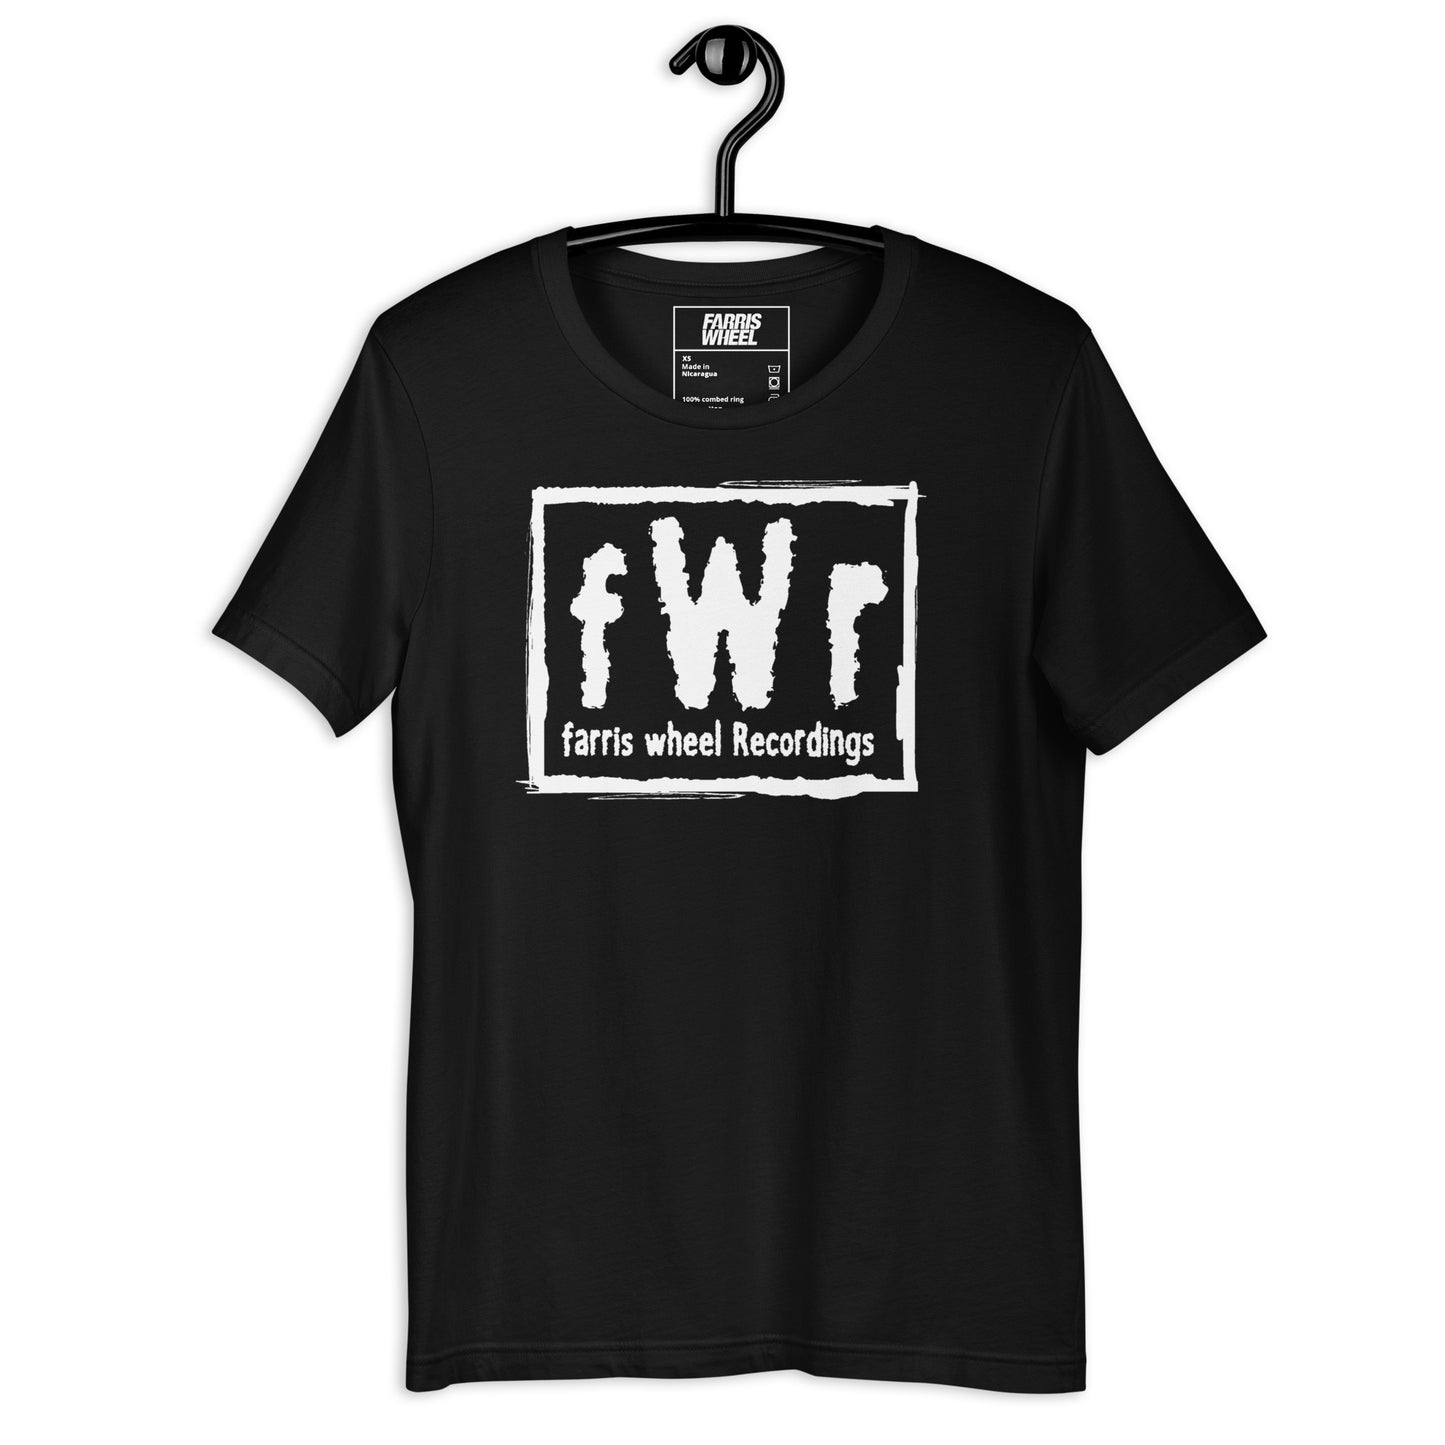 fWr Music Not Media Unisex t-shirt